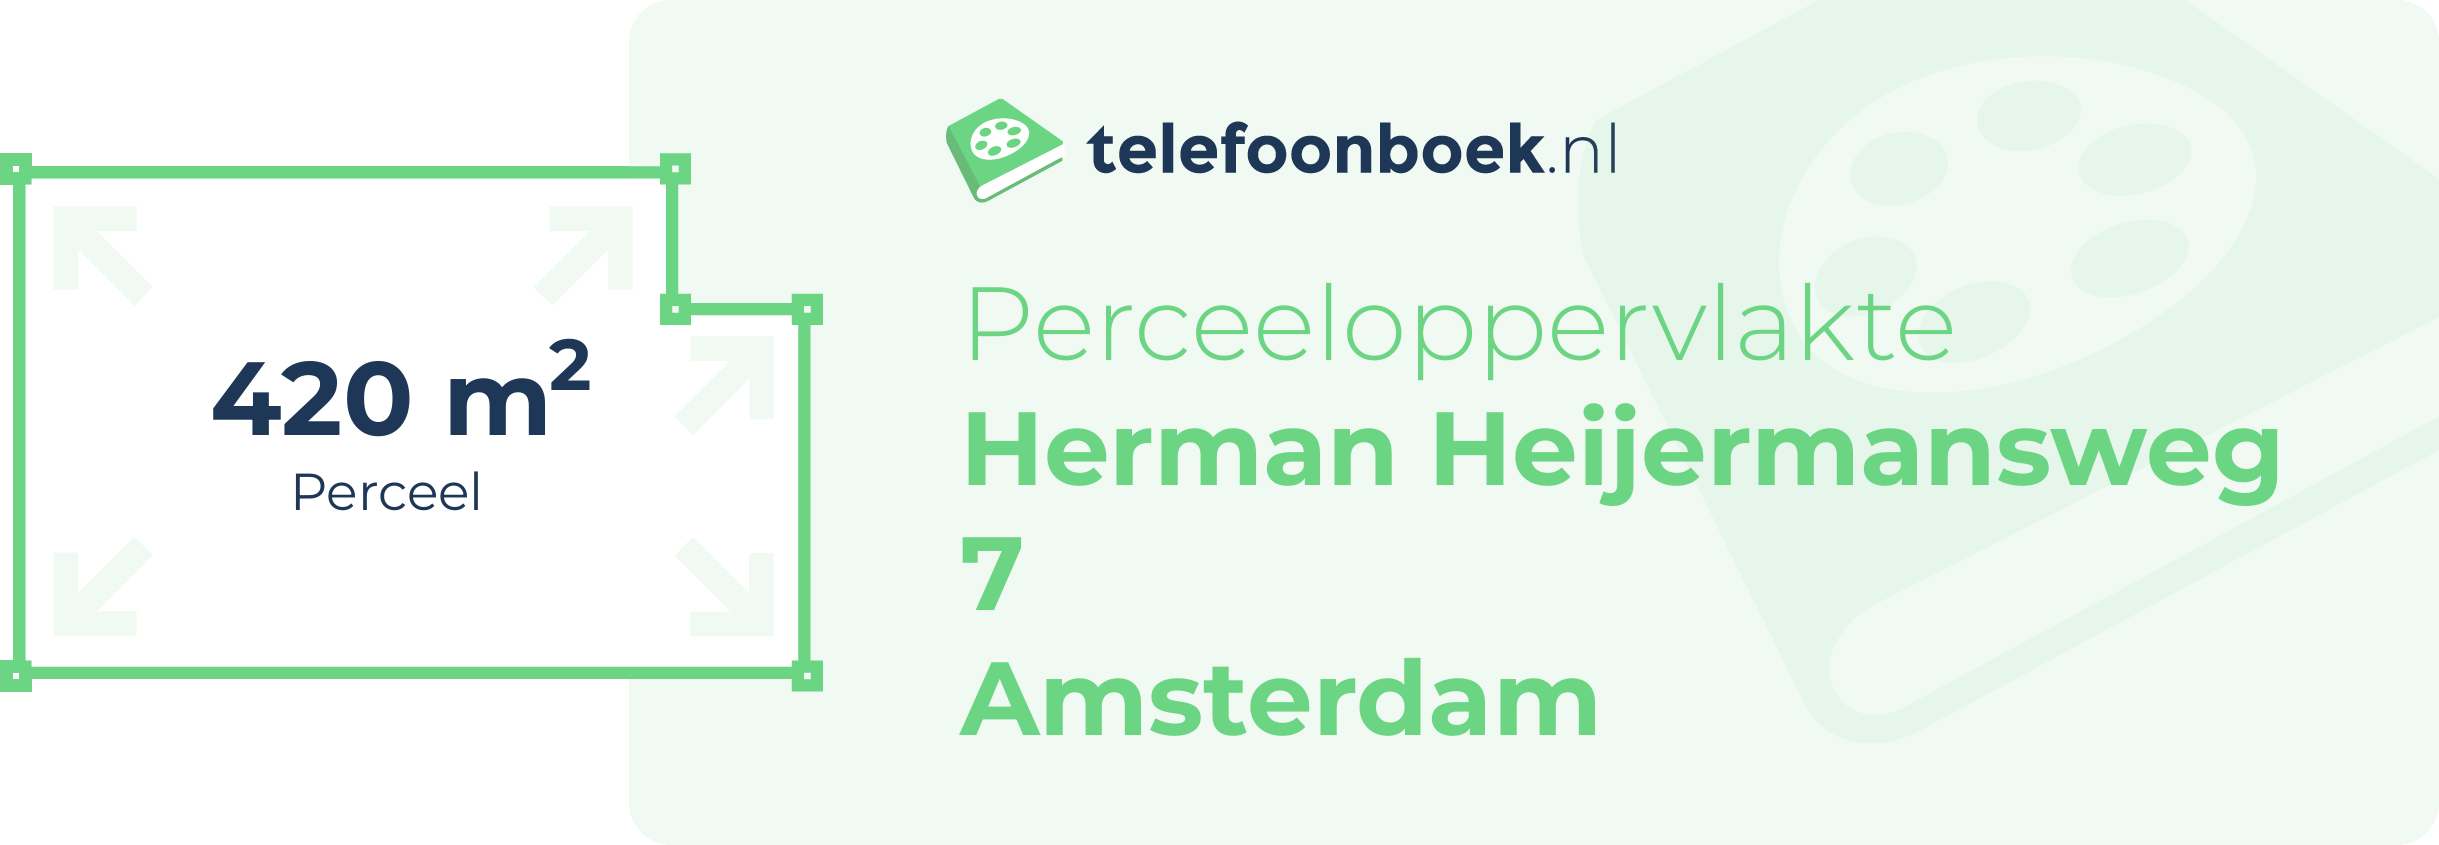 Perceeloppervlakte Herman Heijermansweg 7 Amsterdam